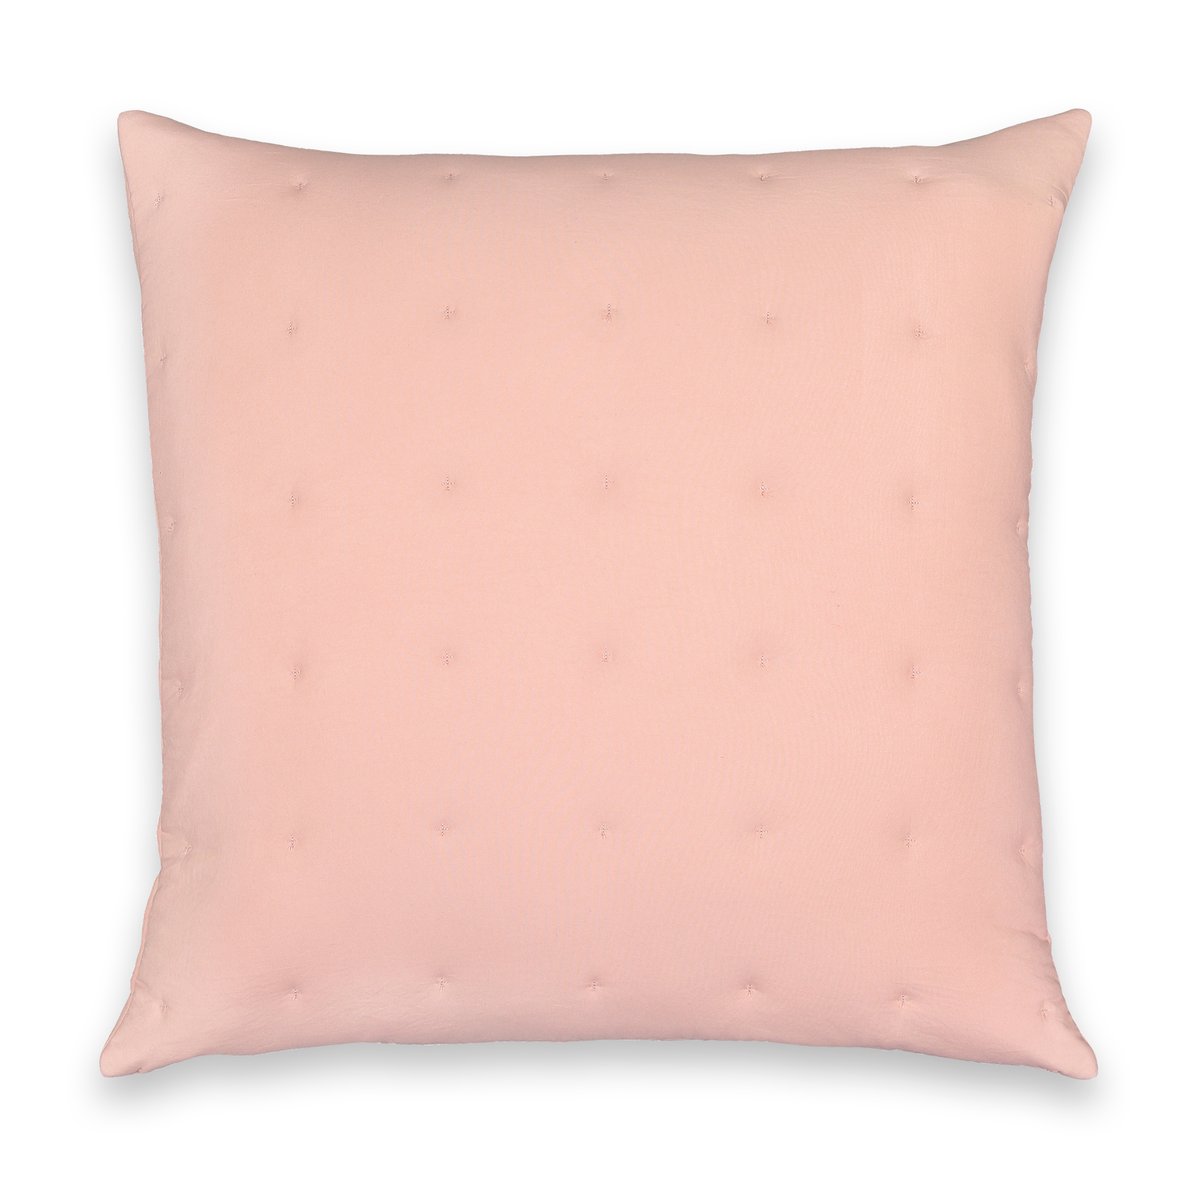 Чехол На подушку из стираной микрофибры Loja 65 x 65 см розовый